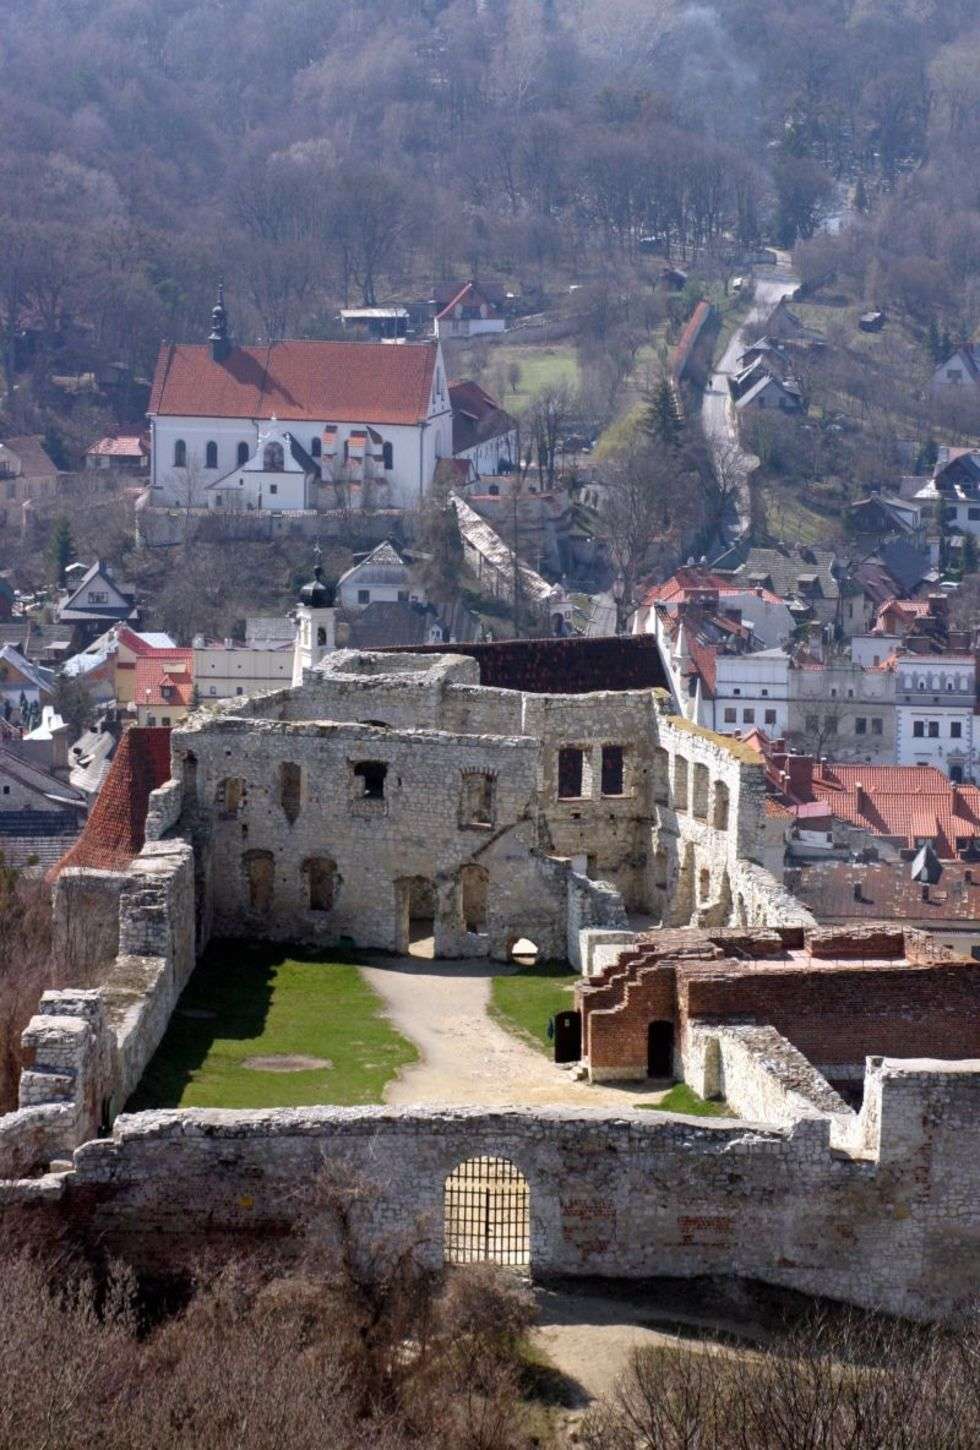  Ruiny zamku w Kazimierzu Dolnym. Wy?lij SMS-a pod numer 71051, wpisuj?c: DW.MIEJSCE57
